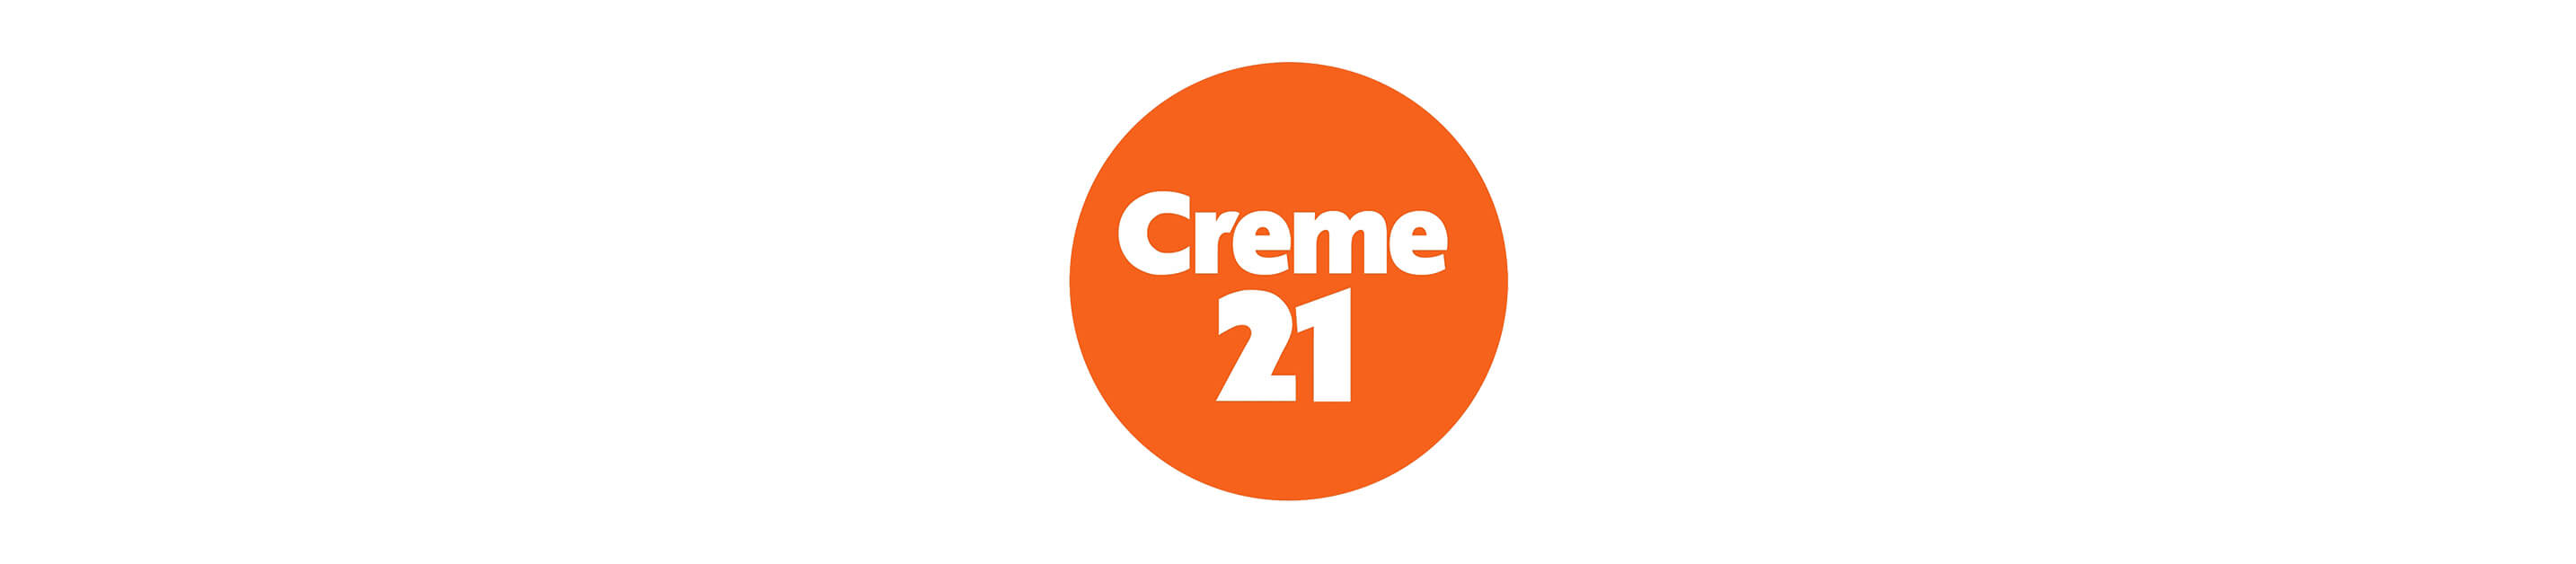 Cream-21